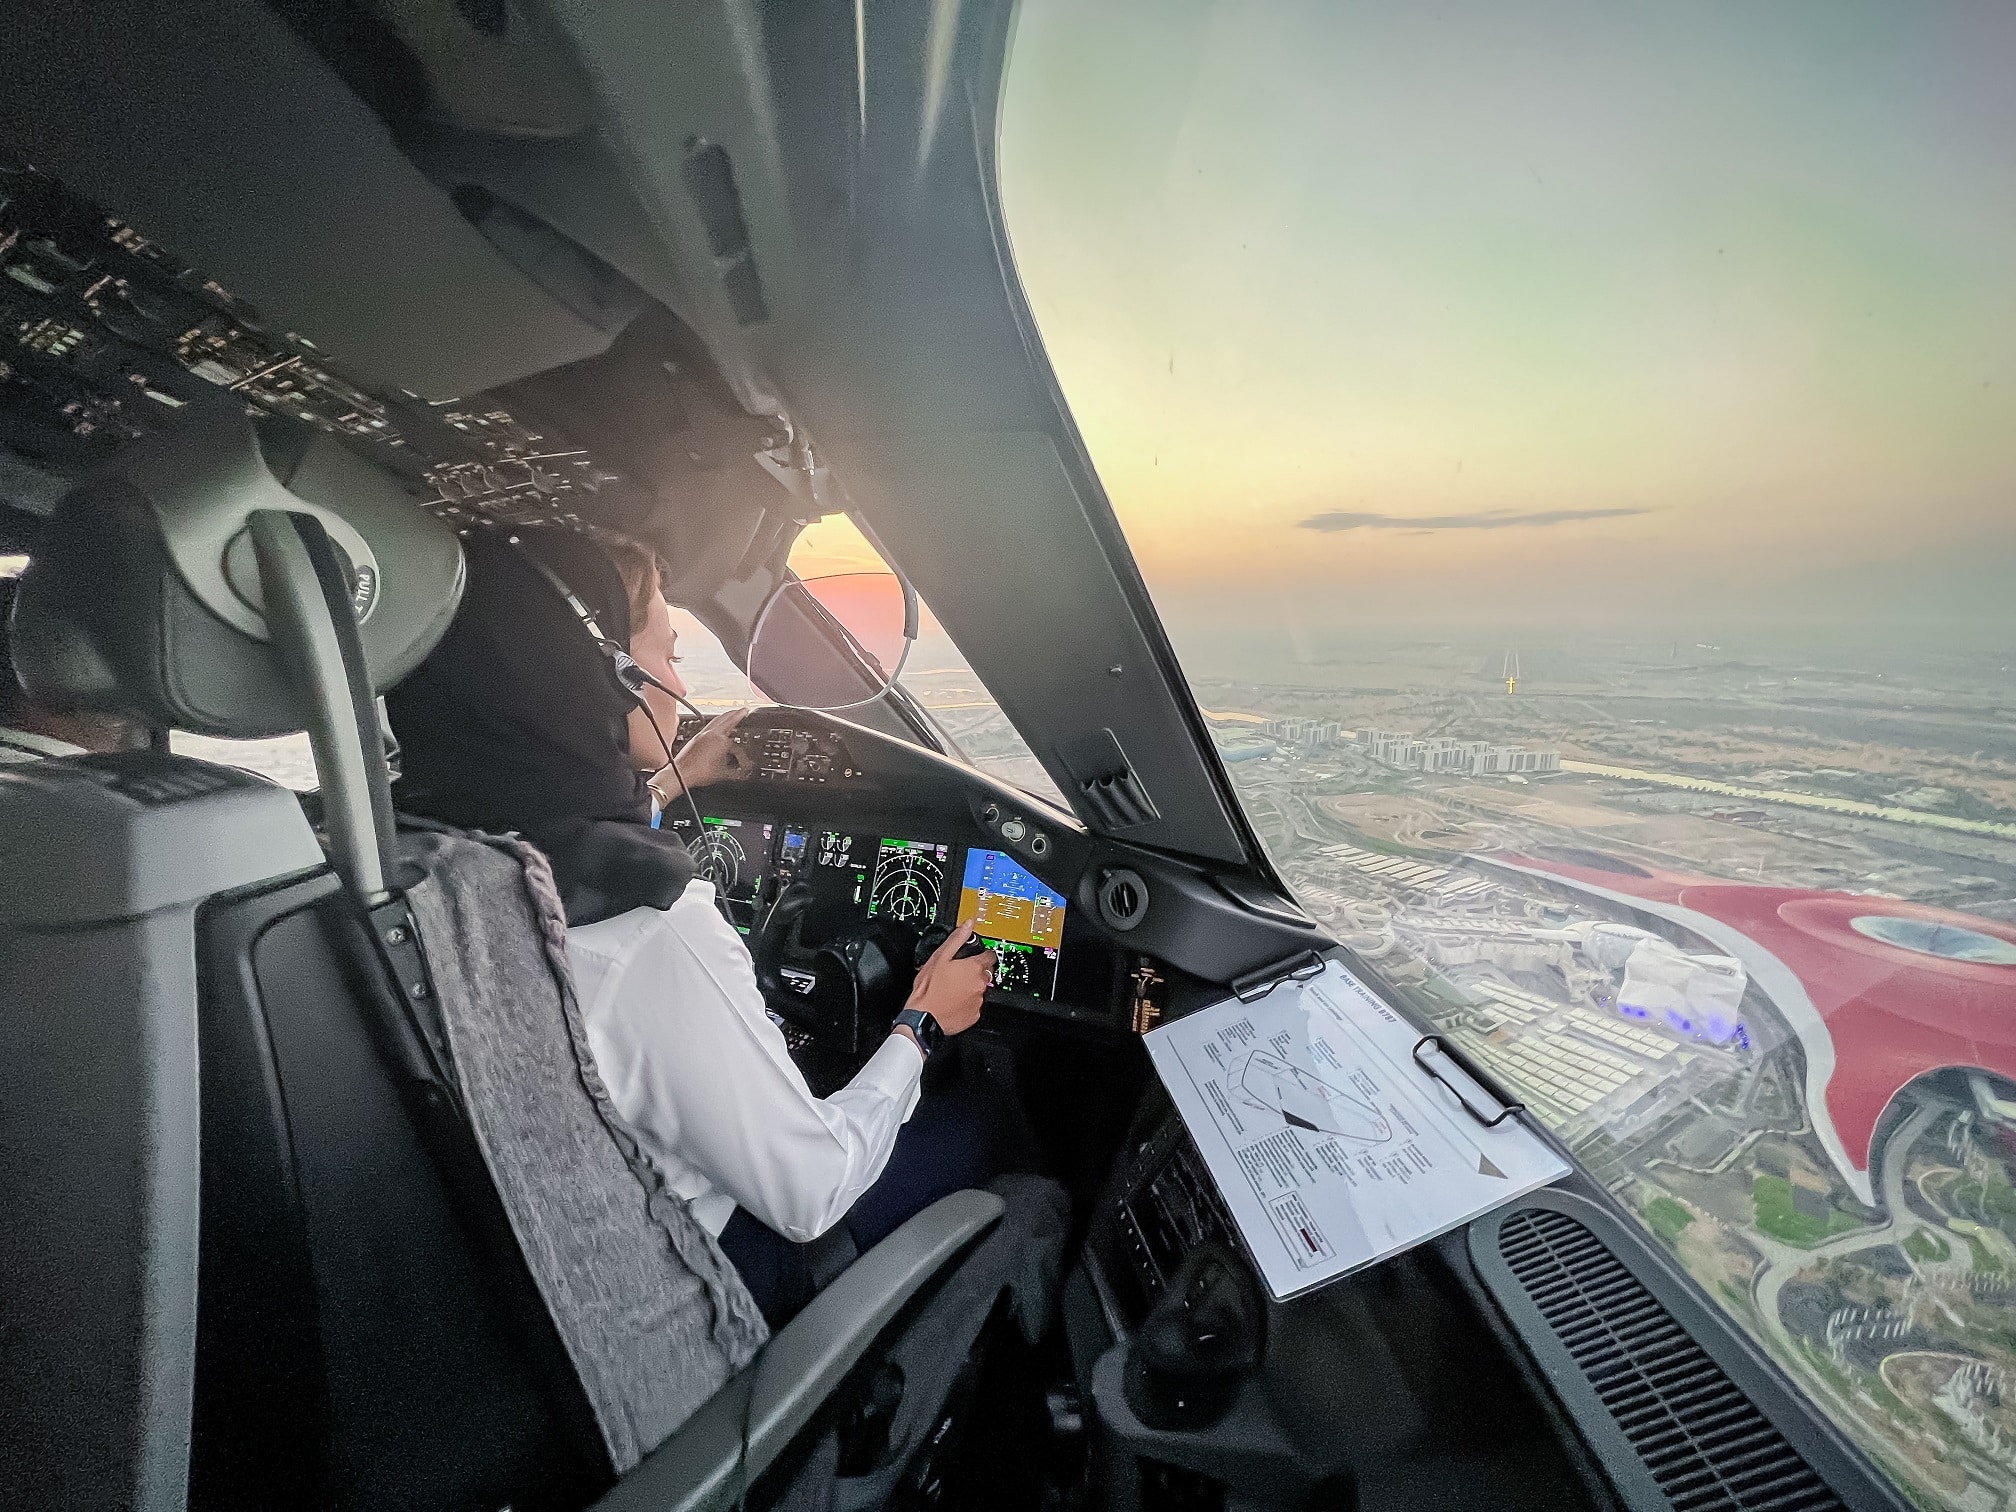 Betydelig prestasjon for Etihad Airways i sitt første treningsprogram i Midtøsten for å gi en pilotlisens for flere mannskaper på Boeing 787 Dreamliner